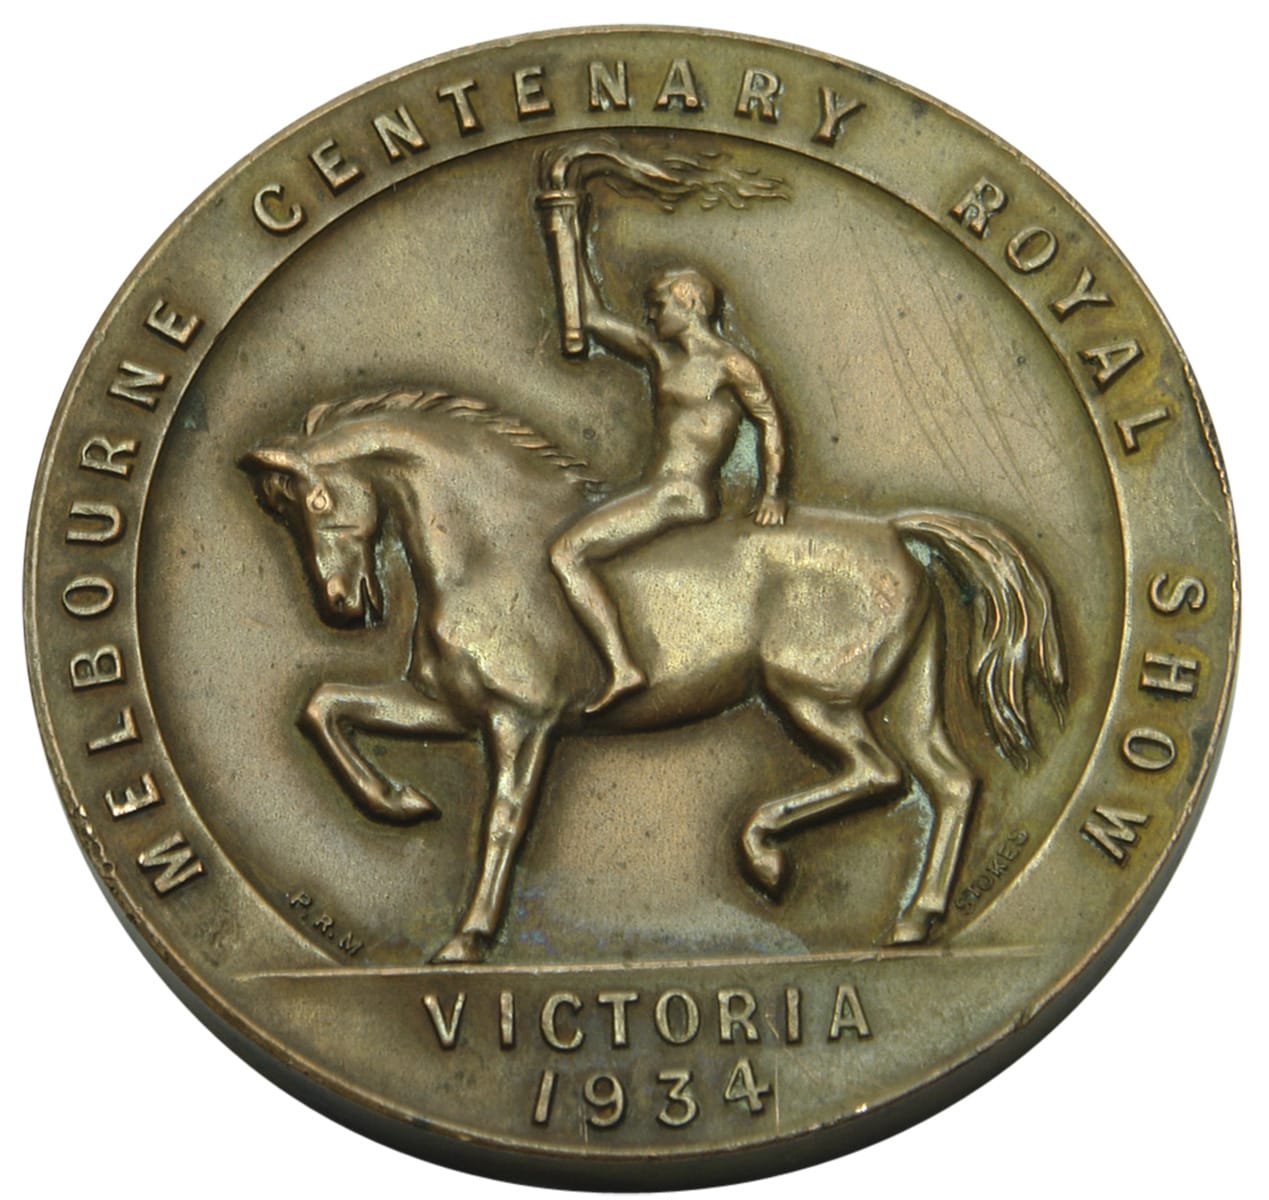 Melbourne Centenary 1935 Royal Show Medal